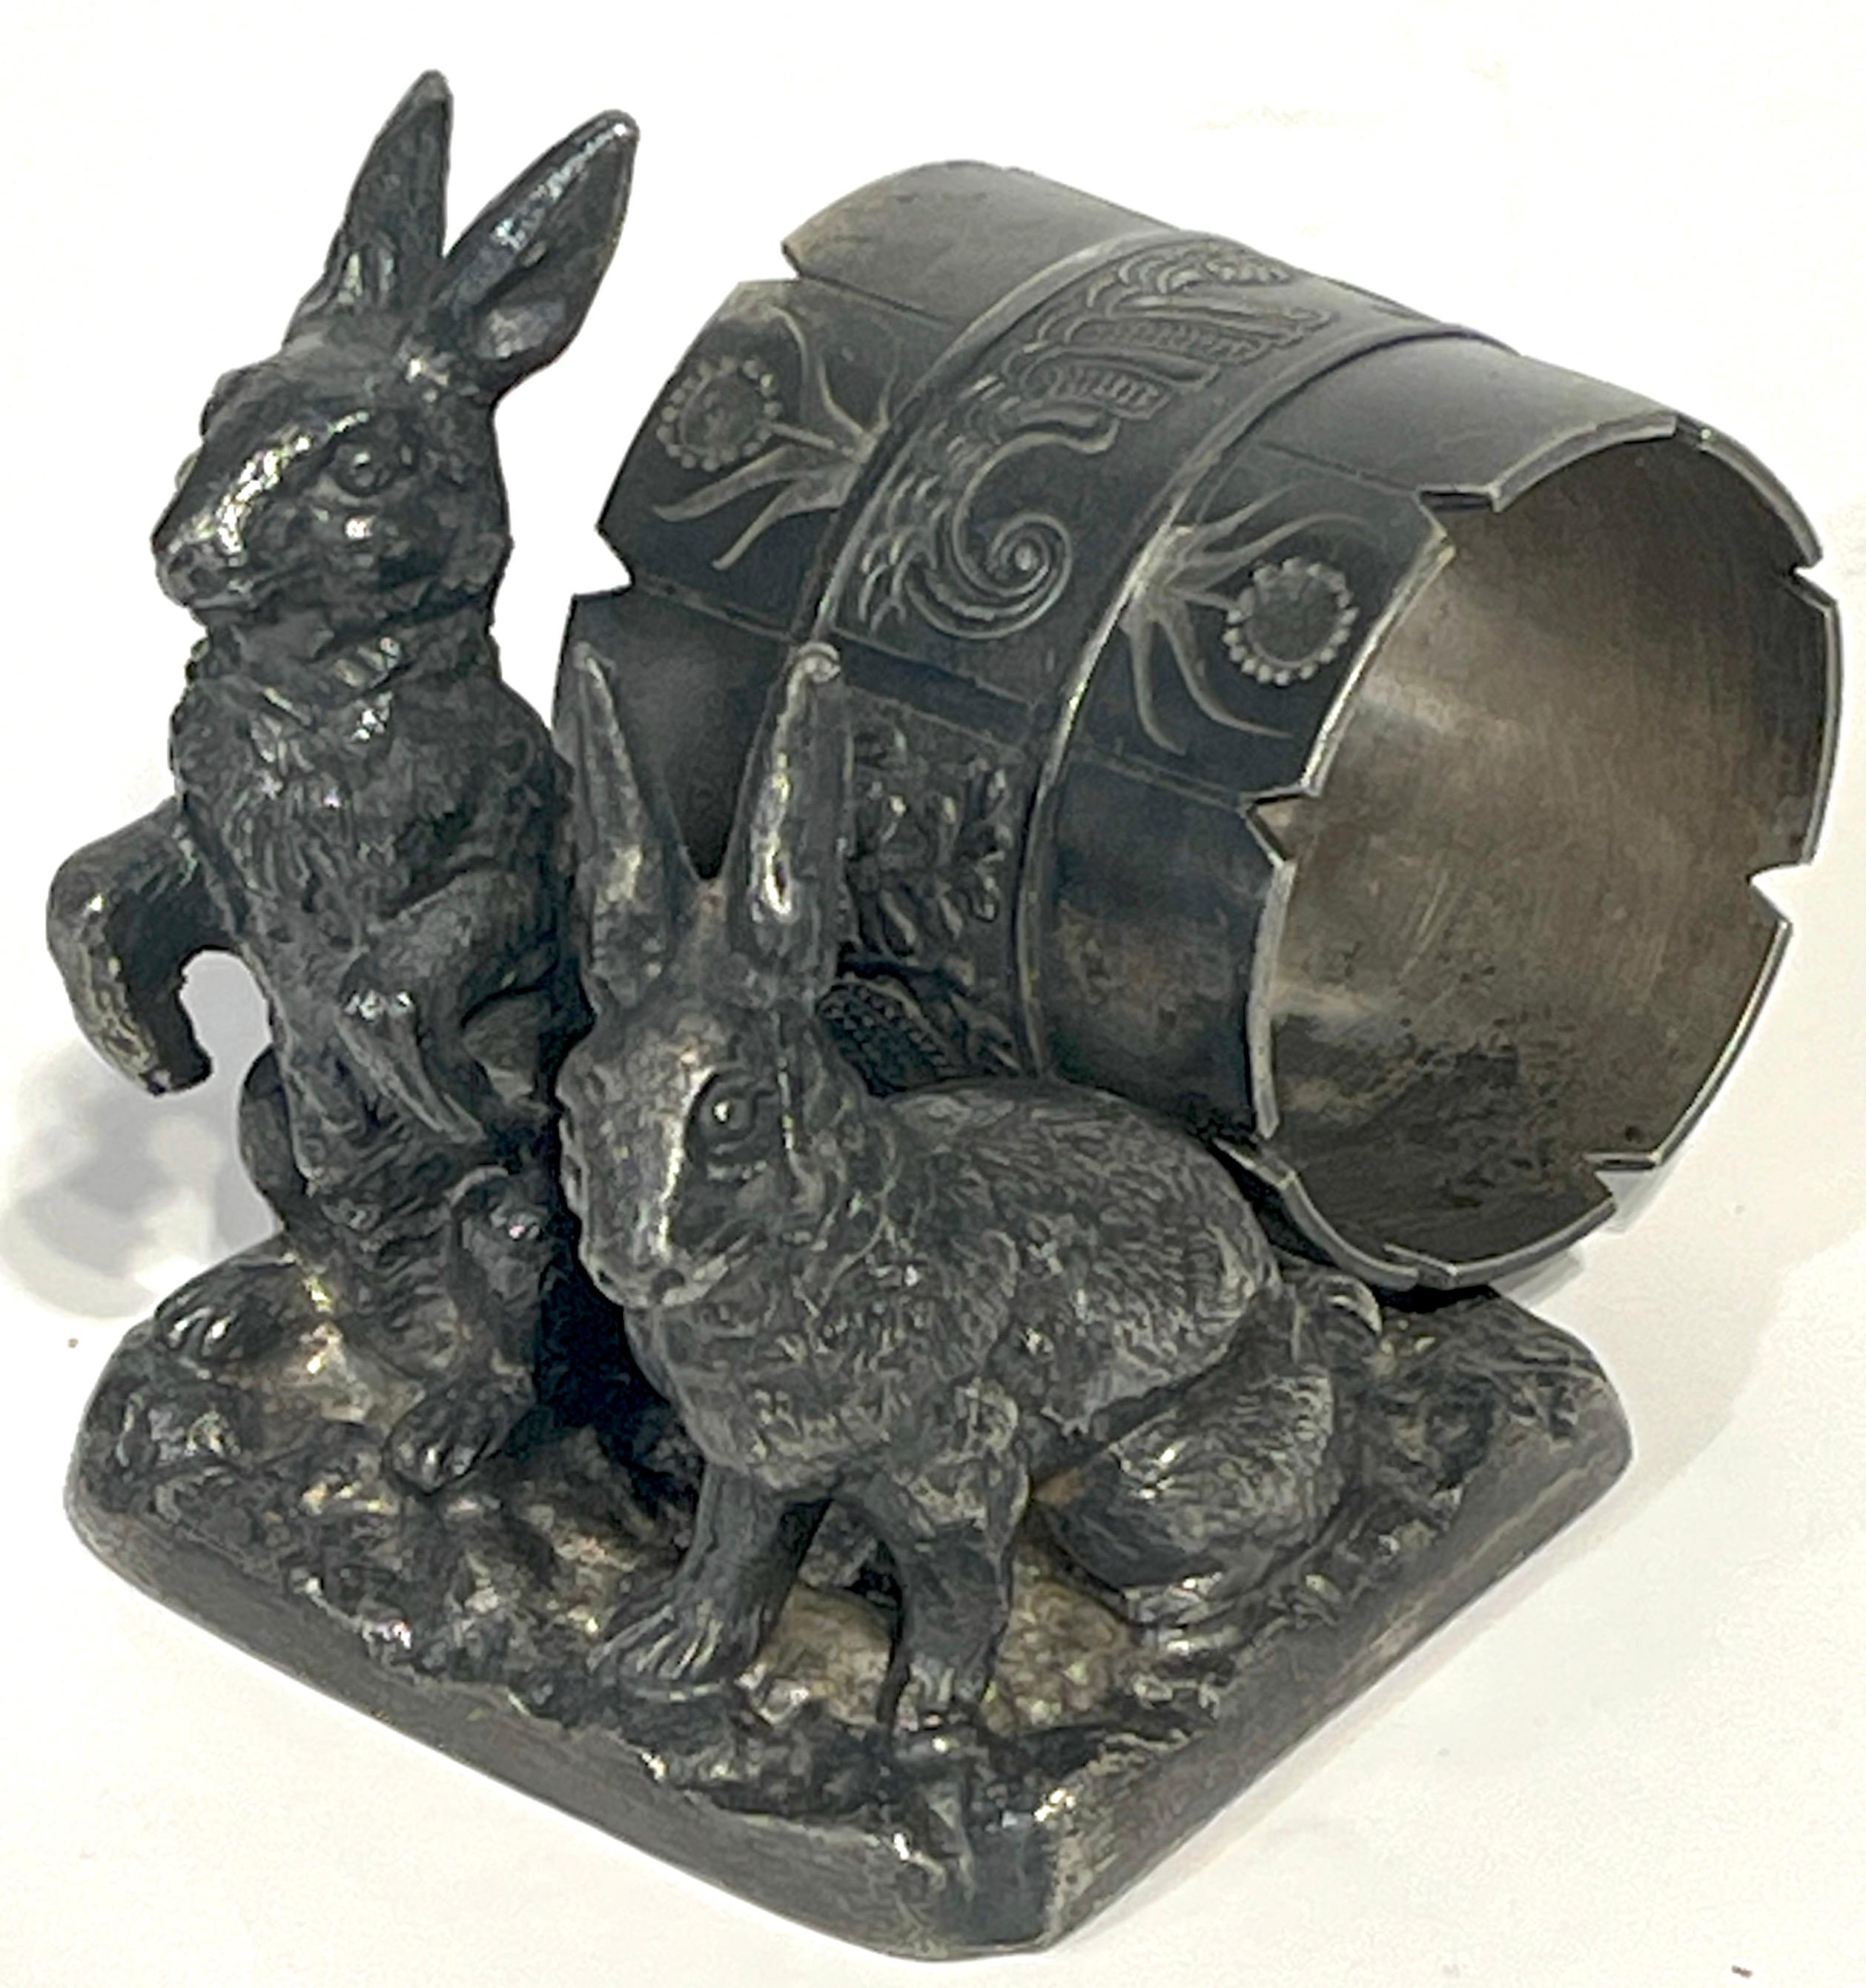 Versilberter figuraler Serviettenring 'Double Rabbits' mit Paar Punkten 
Pairpoint MFG Co. New Bedford, MA, um 1890

Für Sammler von exquisitem Geschirr ist dieser figurale Serviettenring von Pairpoint aus dem Jahr 1890 ein seltener Fund. Messen